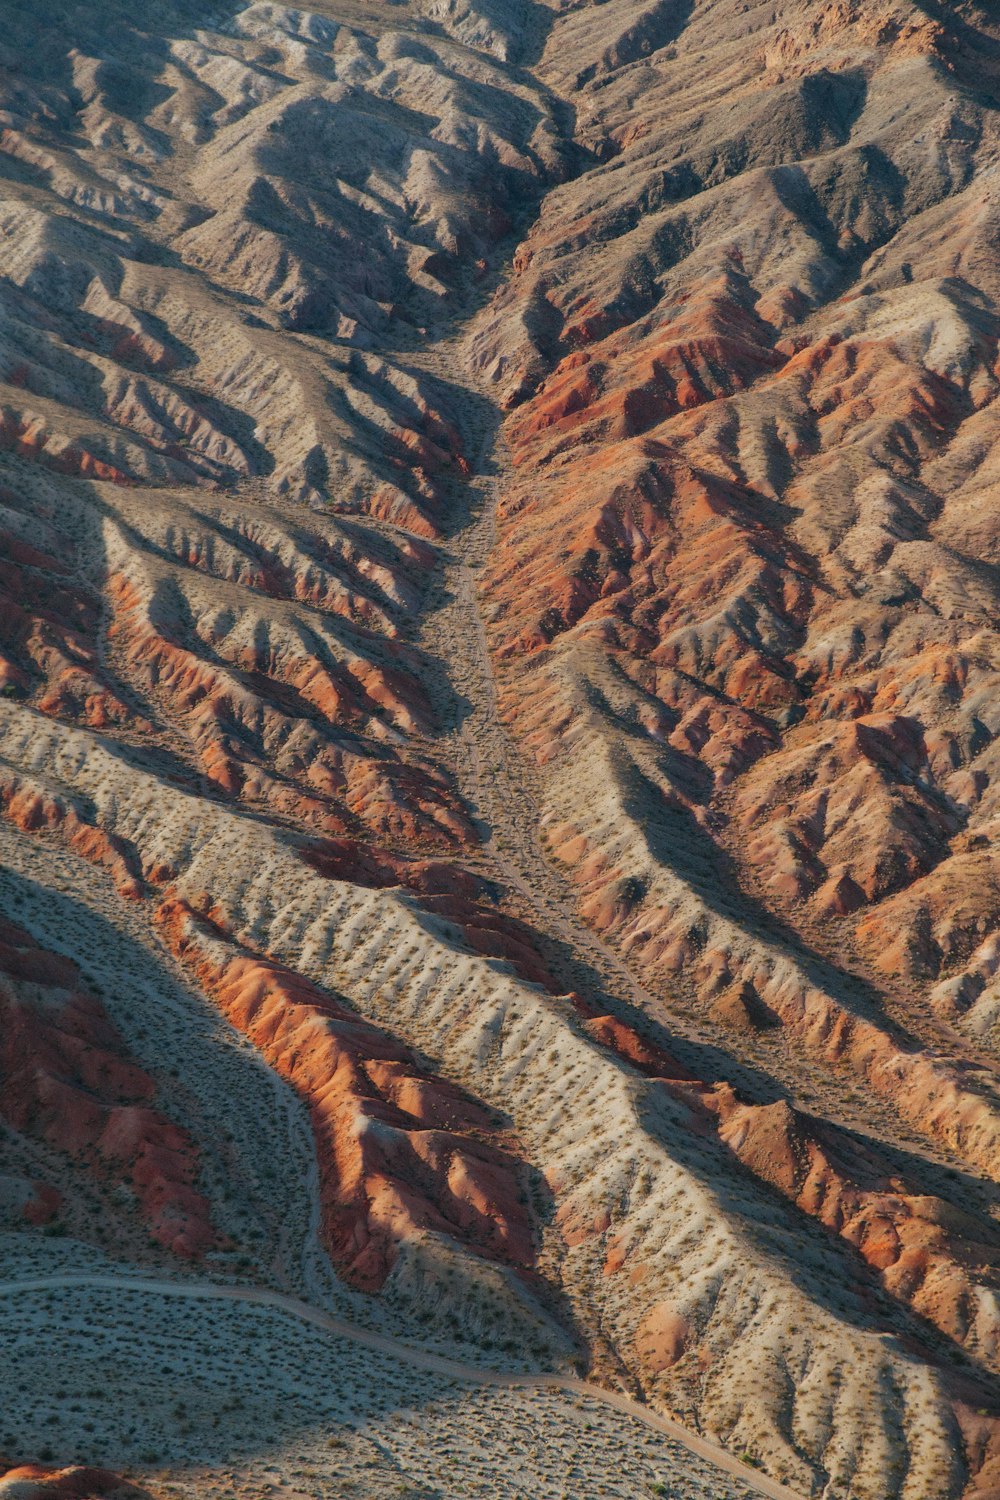 Fotografia a volo d'uccello delle Brown Mountains